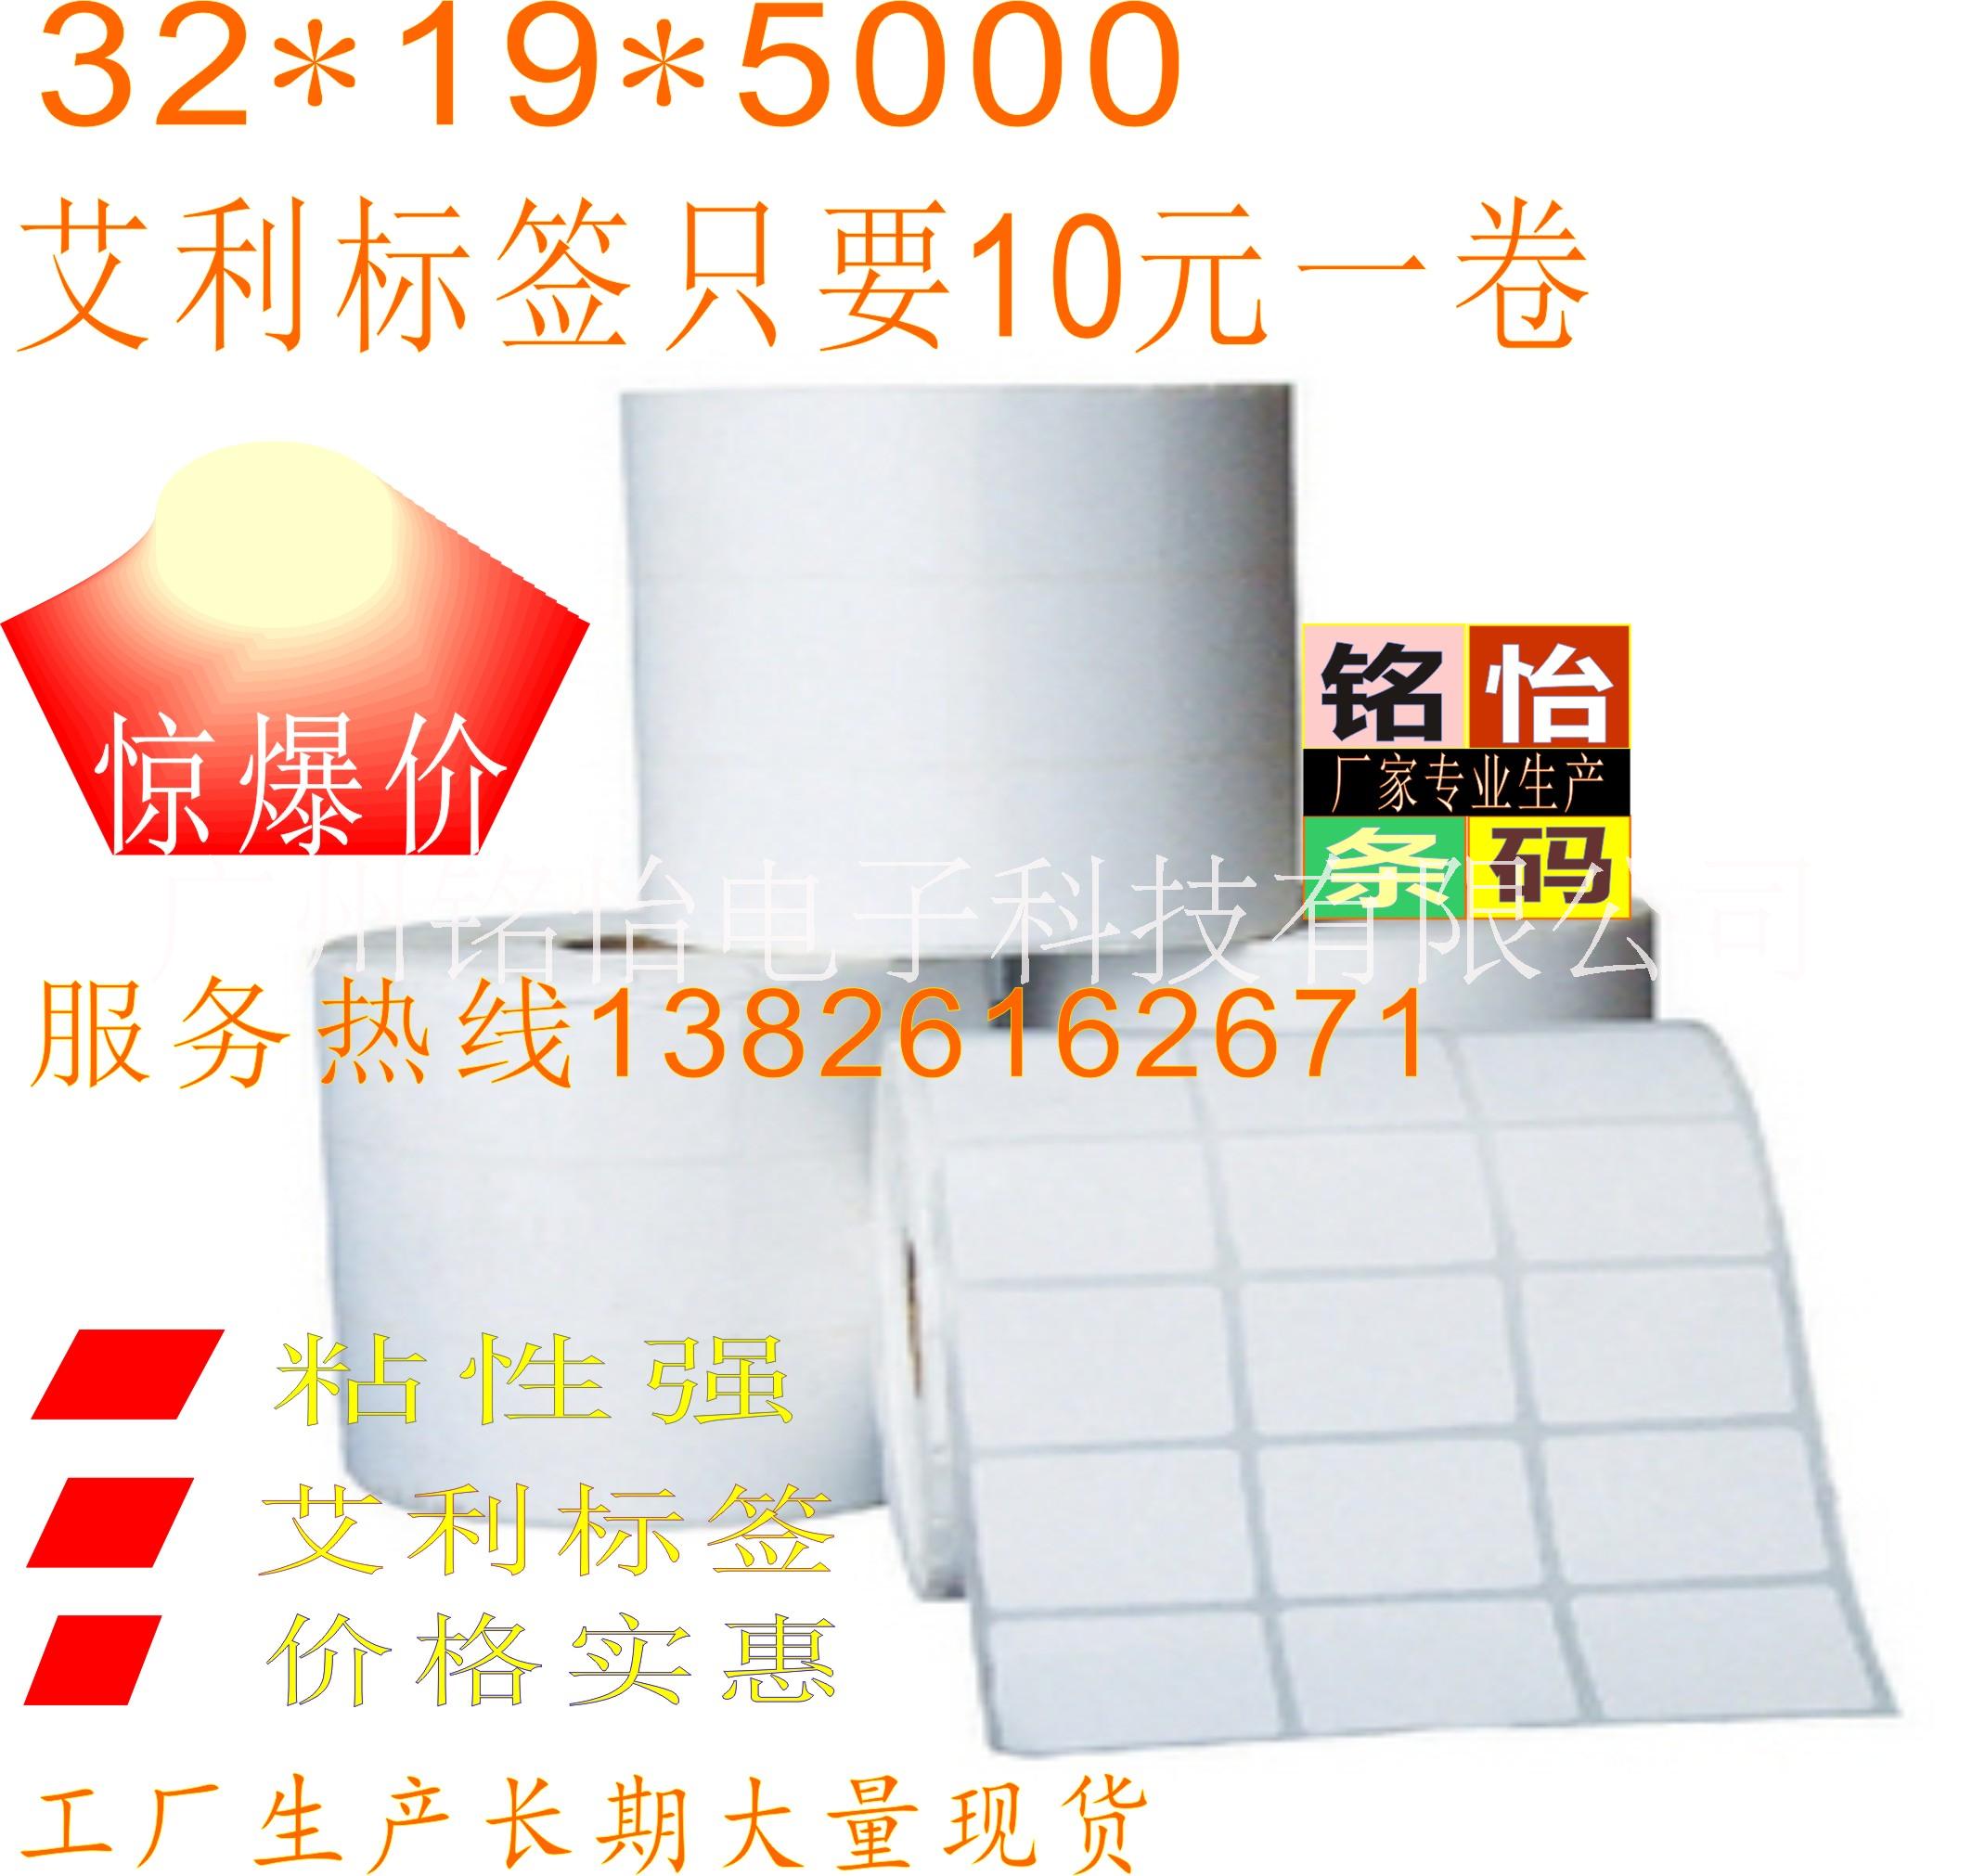 条码纸 标签纸 空白标签纸 不干胶标签 广州厂家专业生产